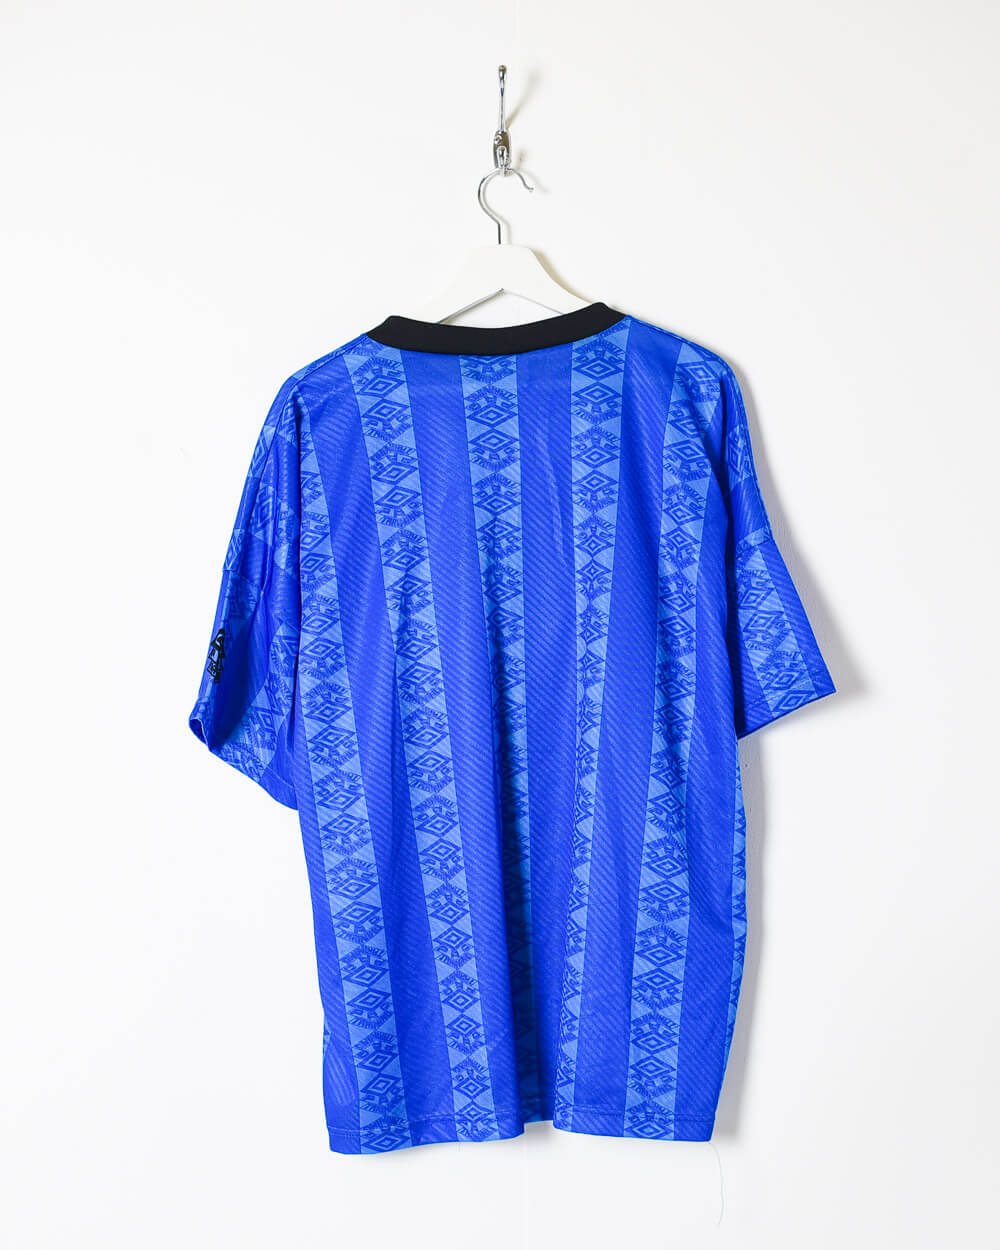 Blue Umbro T-Shirt - X-Large